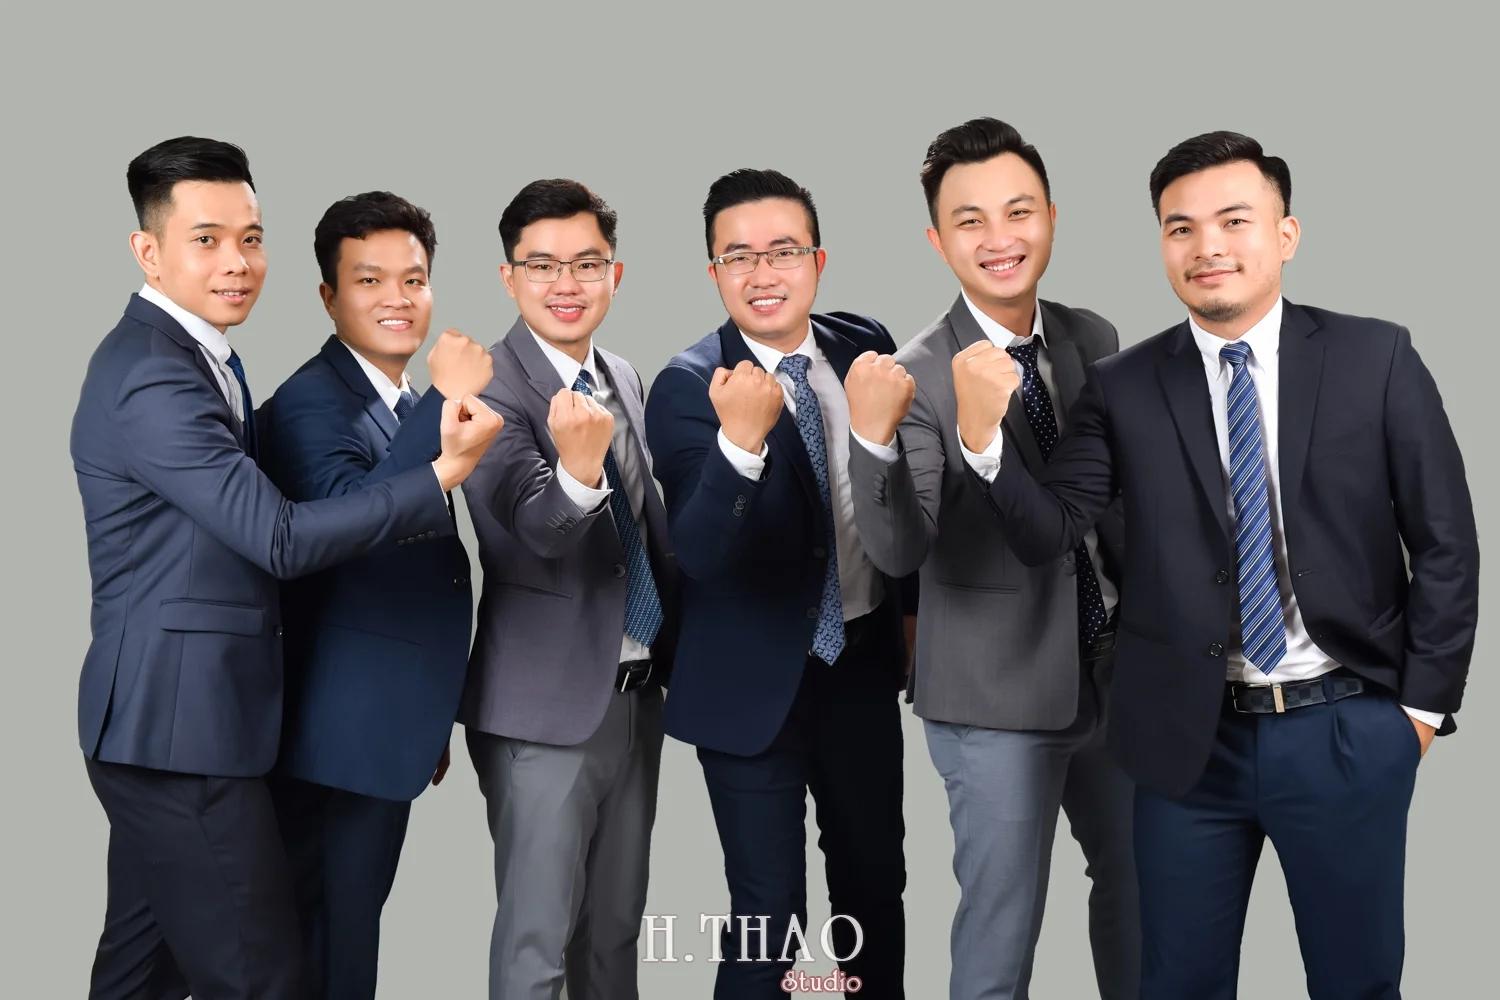 Anh profile cong ty 14 - Chụp ảnh profile cho đội nhóm sale ngân hàng - HThao Studio